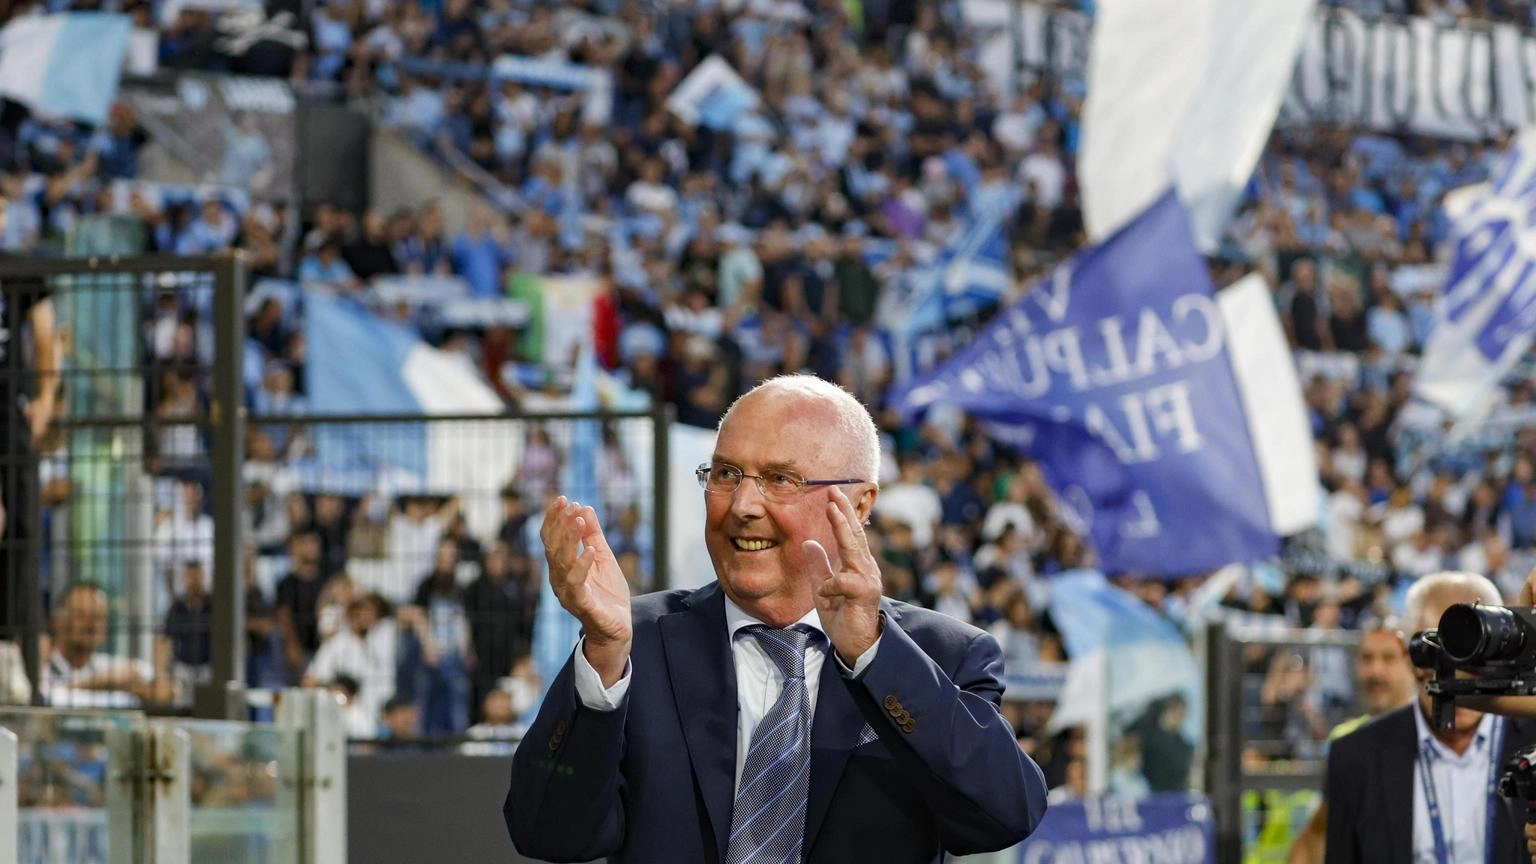 La Lazio 'celebra' Eriksson prima della partita col Sassuolo